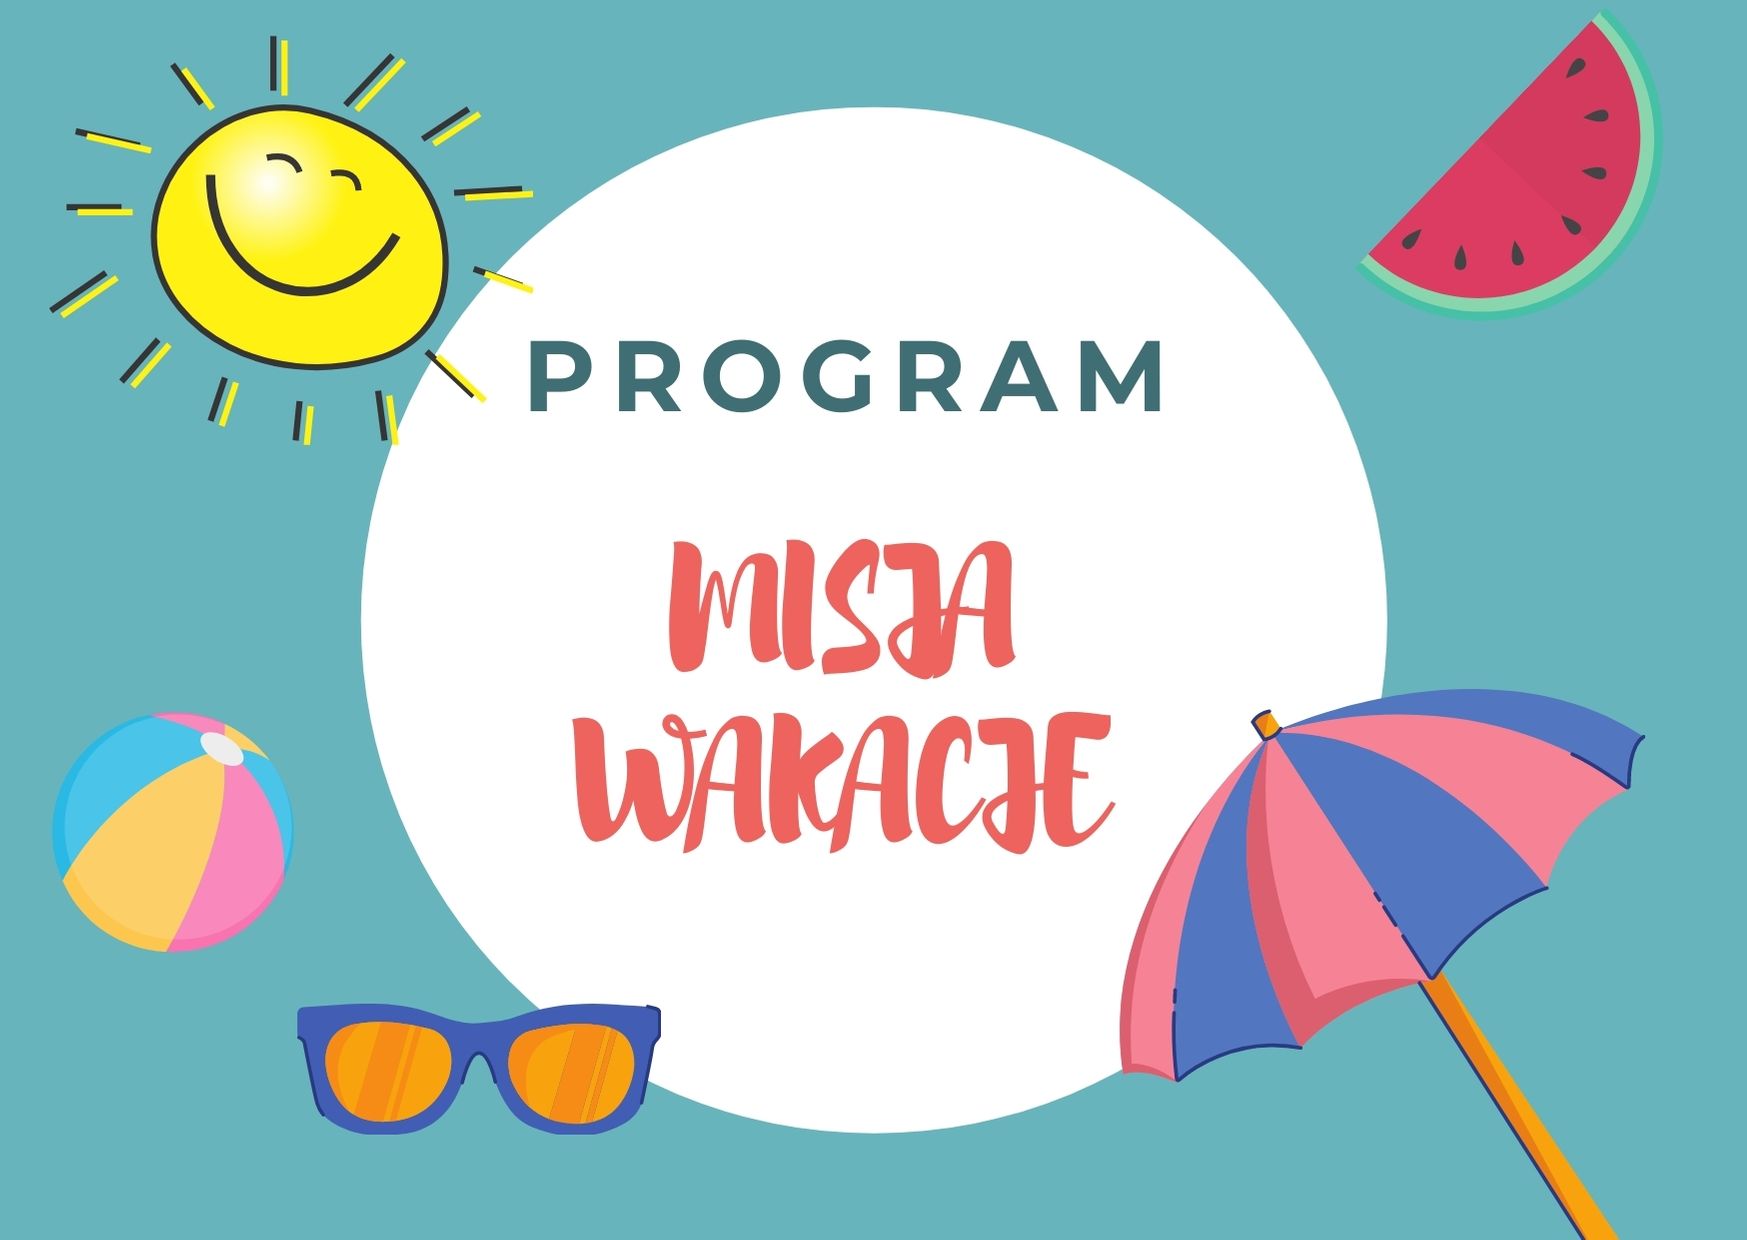 Grafika przedstawia napis: Program Misja Wakacje oraz elementy takie jak: słońce, okulary, piłka, arbuz, parasolka. 